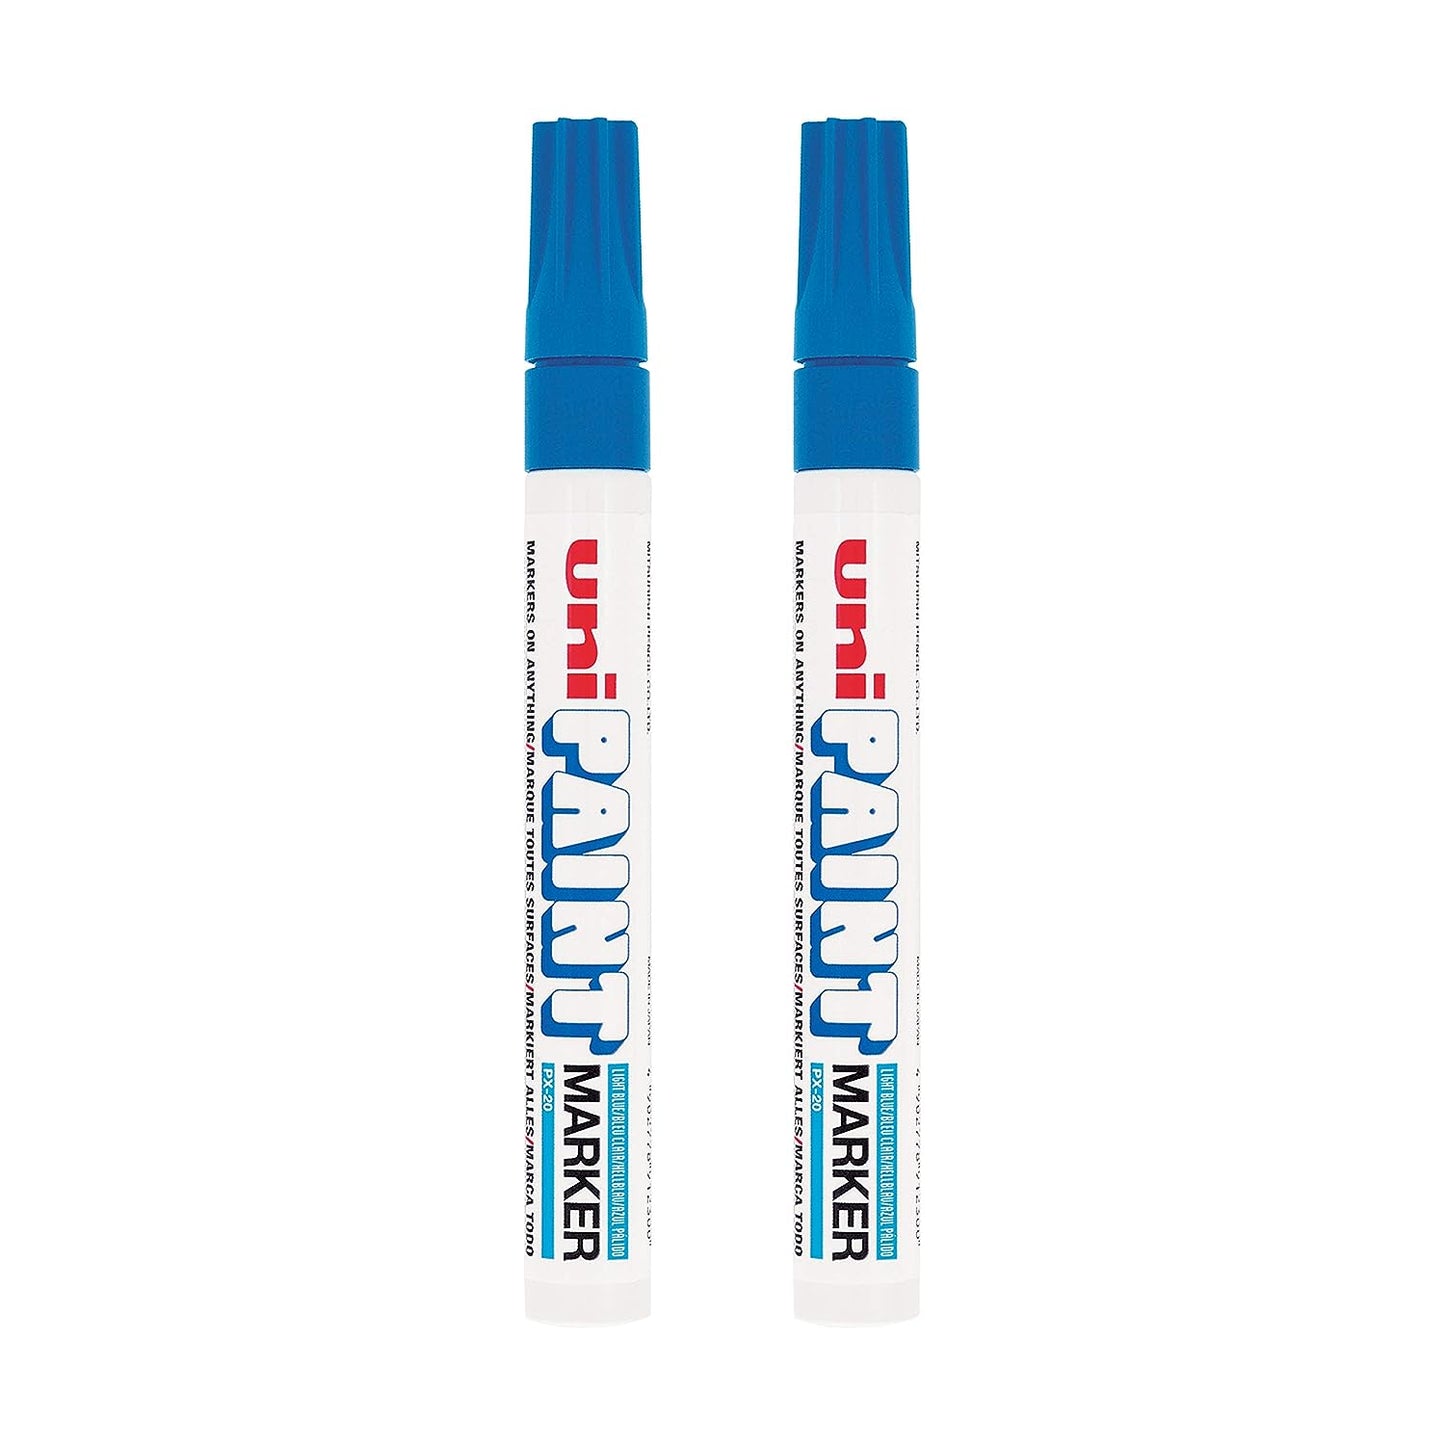 Uniball Px20 Paint Marker - Light Blue